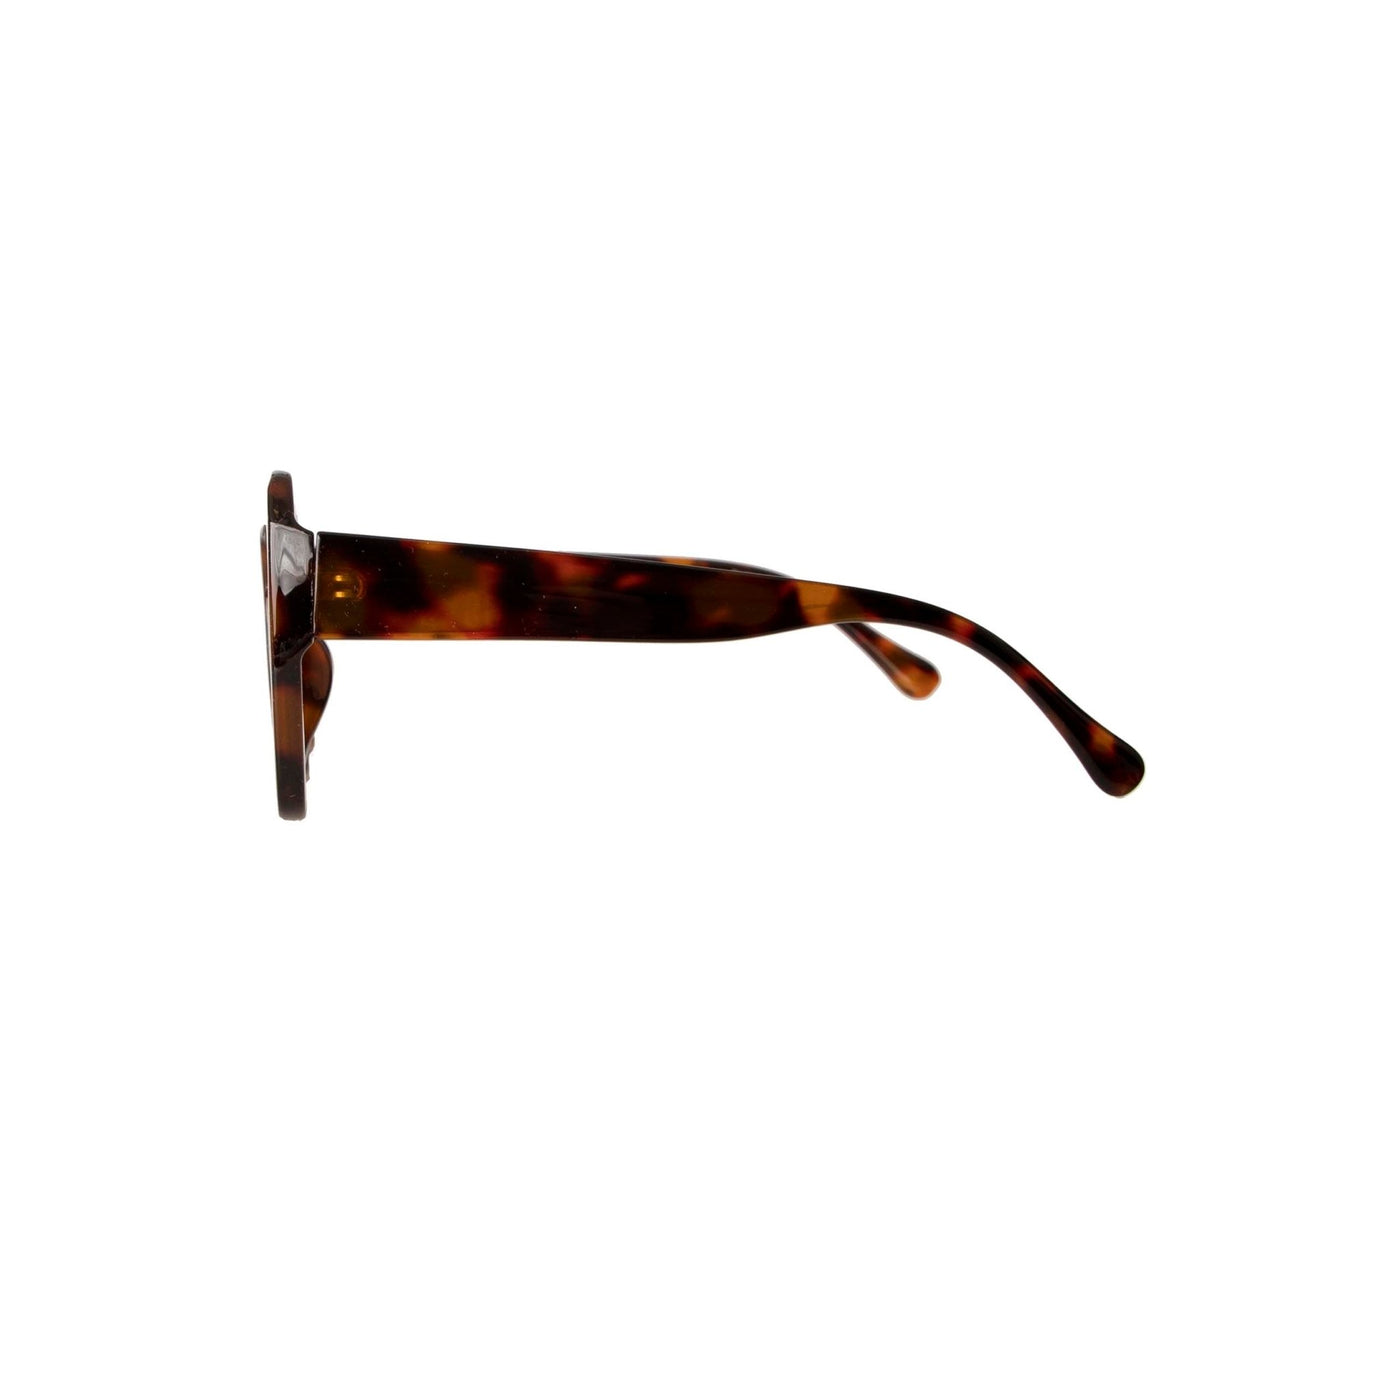 Sass Cami Sunglasses in Tortoiseshell Frame - Hey Sara